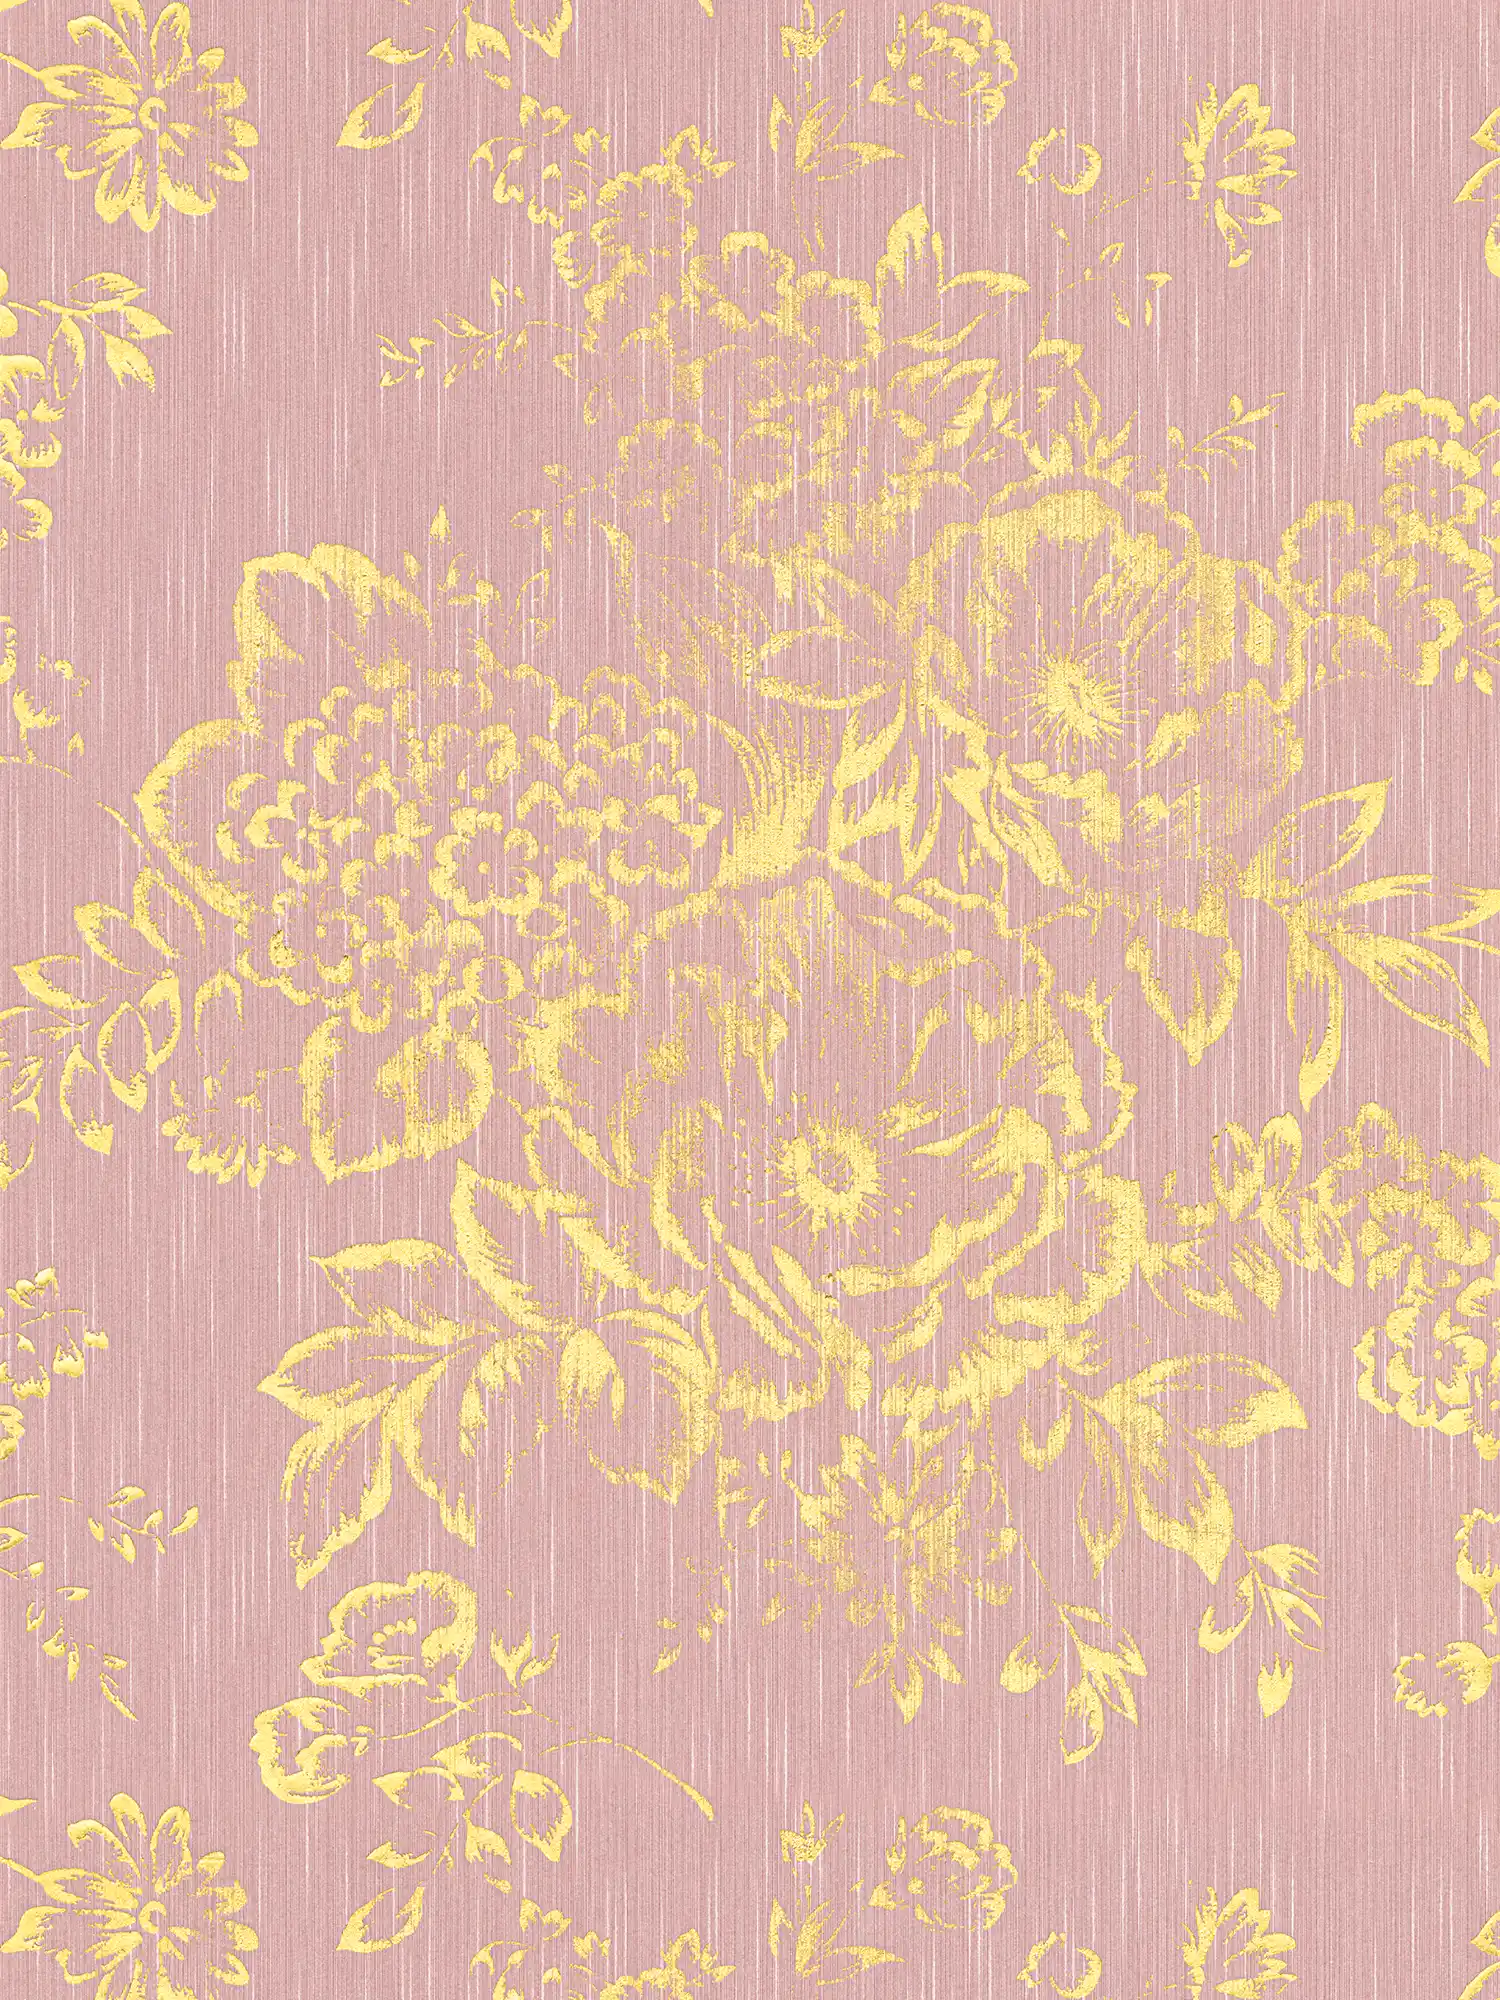 Papier peint structuré avec motif floral doré - or, rose
